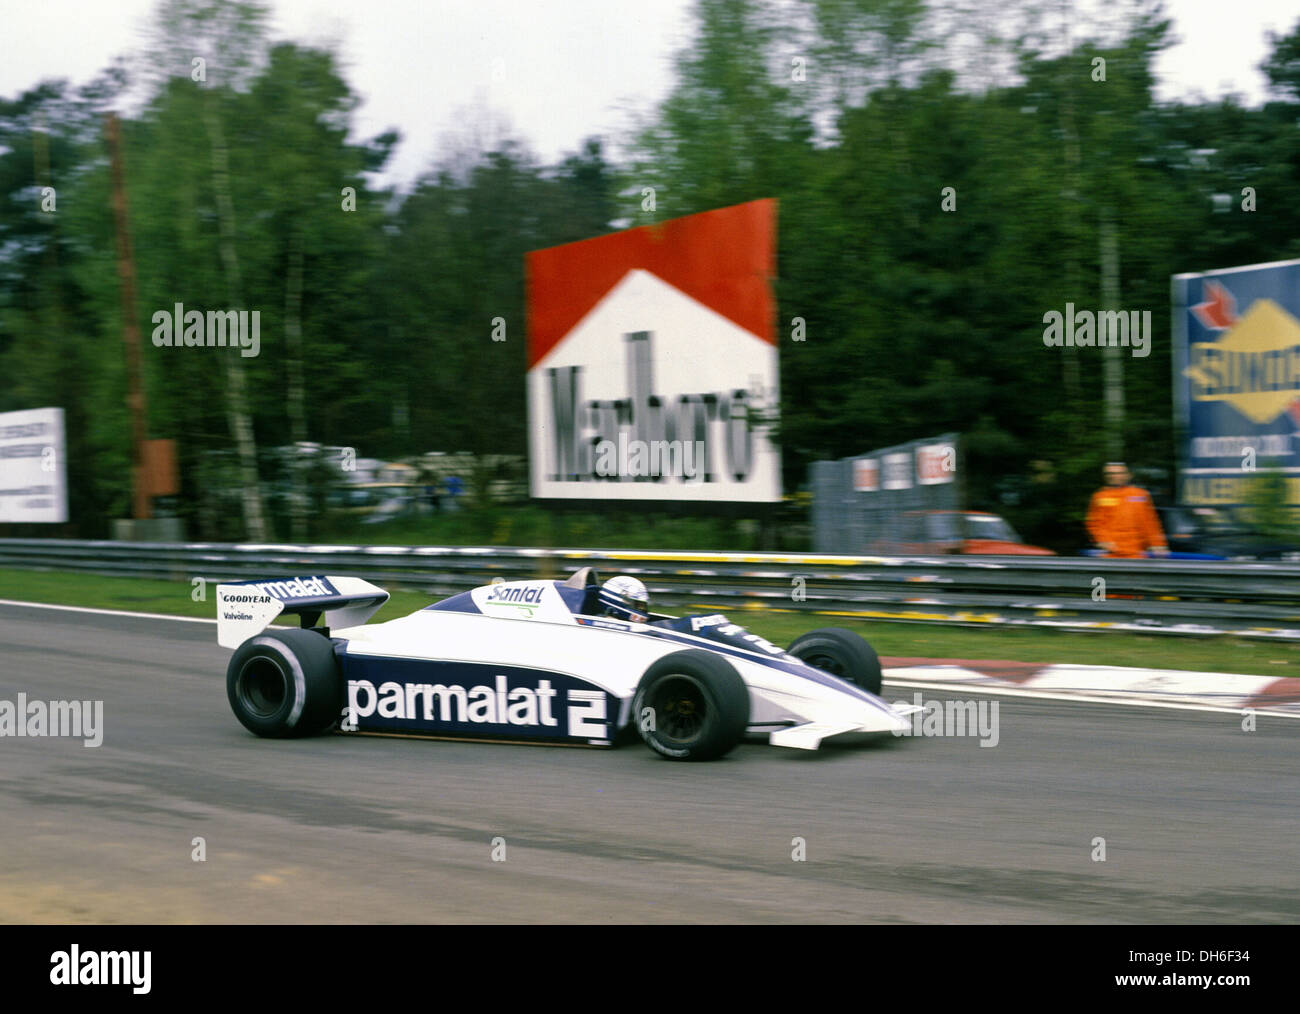 Riccardo Patrese dans une Brabham BT50 dans le GP de Belgique à Spa, Belgique 1982. Banque D'Images